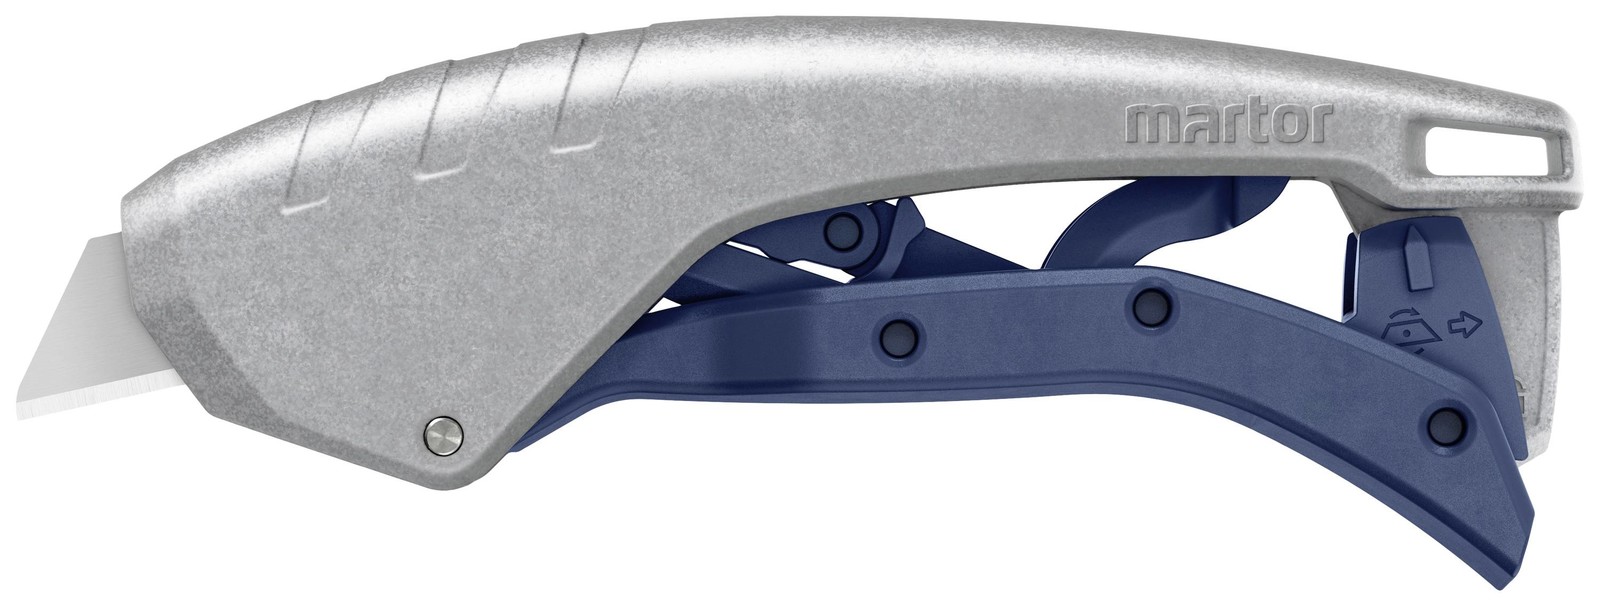 Martor 610002.02 Bezpečnostní nůž Secunorm 610 XDR s trapézovou čepelí 160099 1 ks